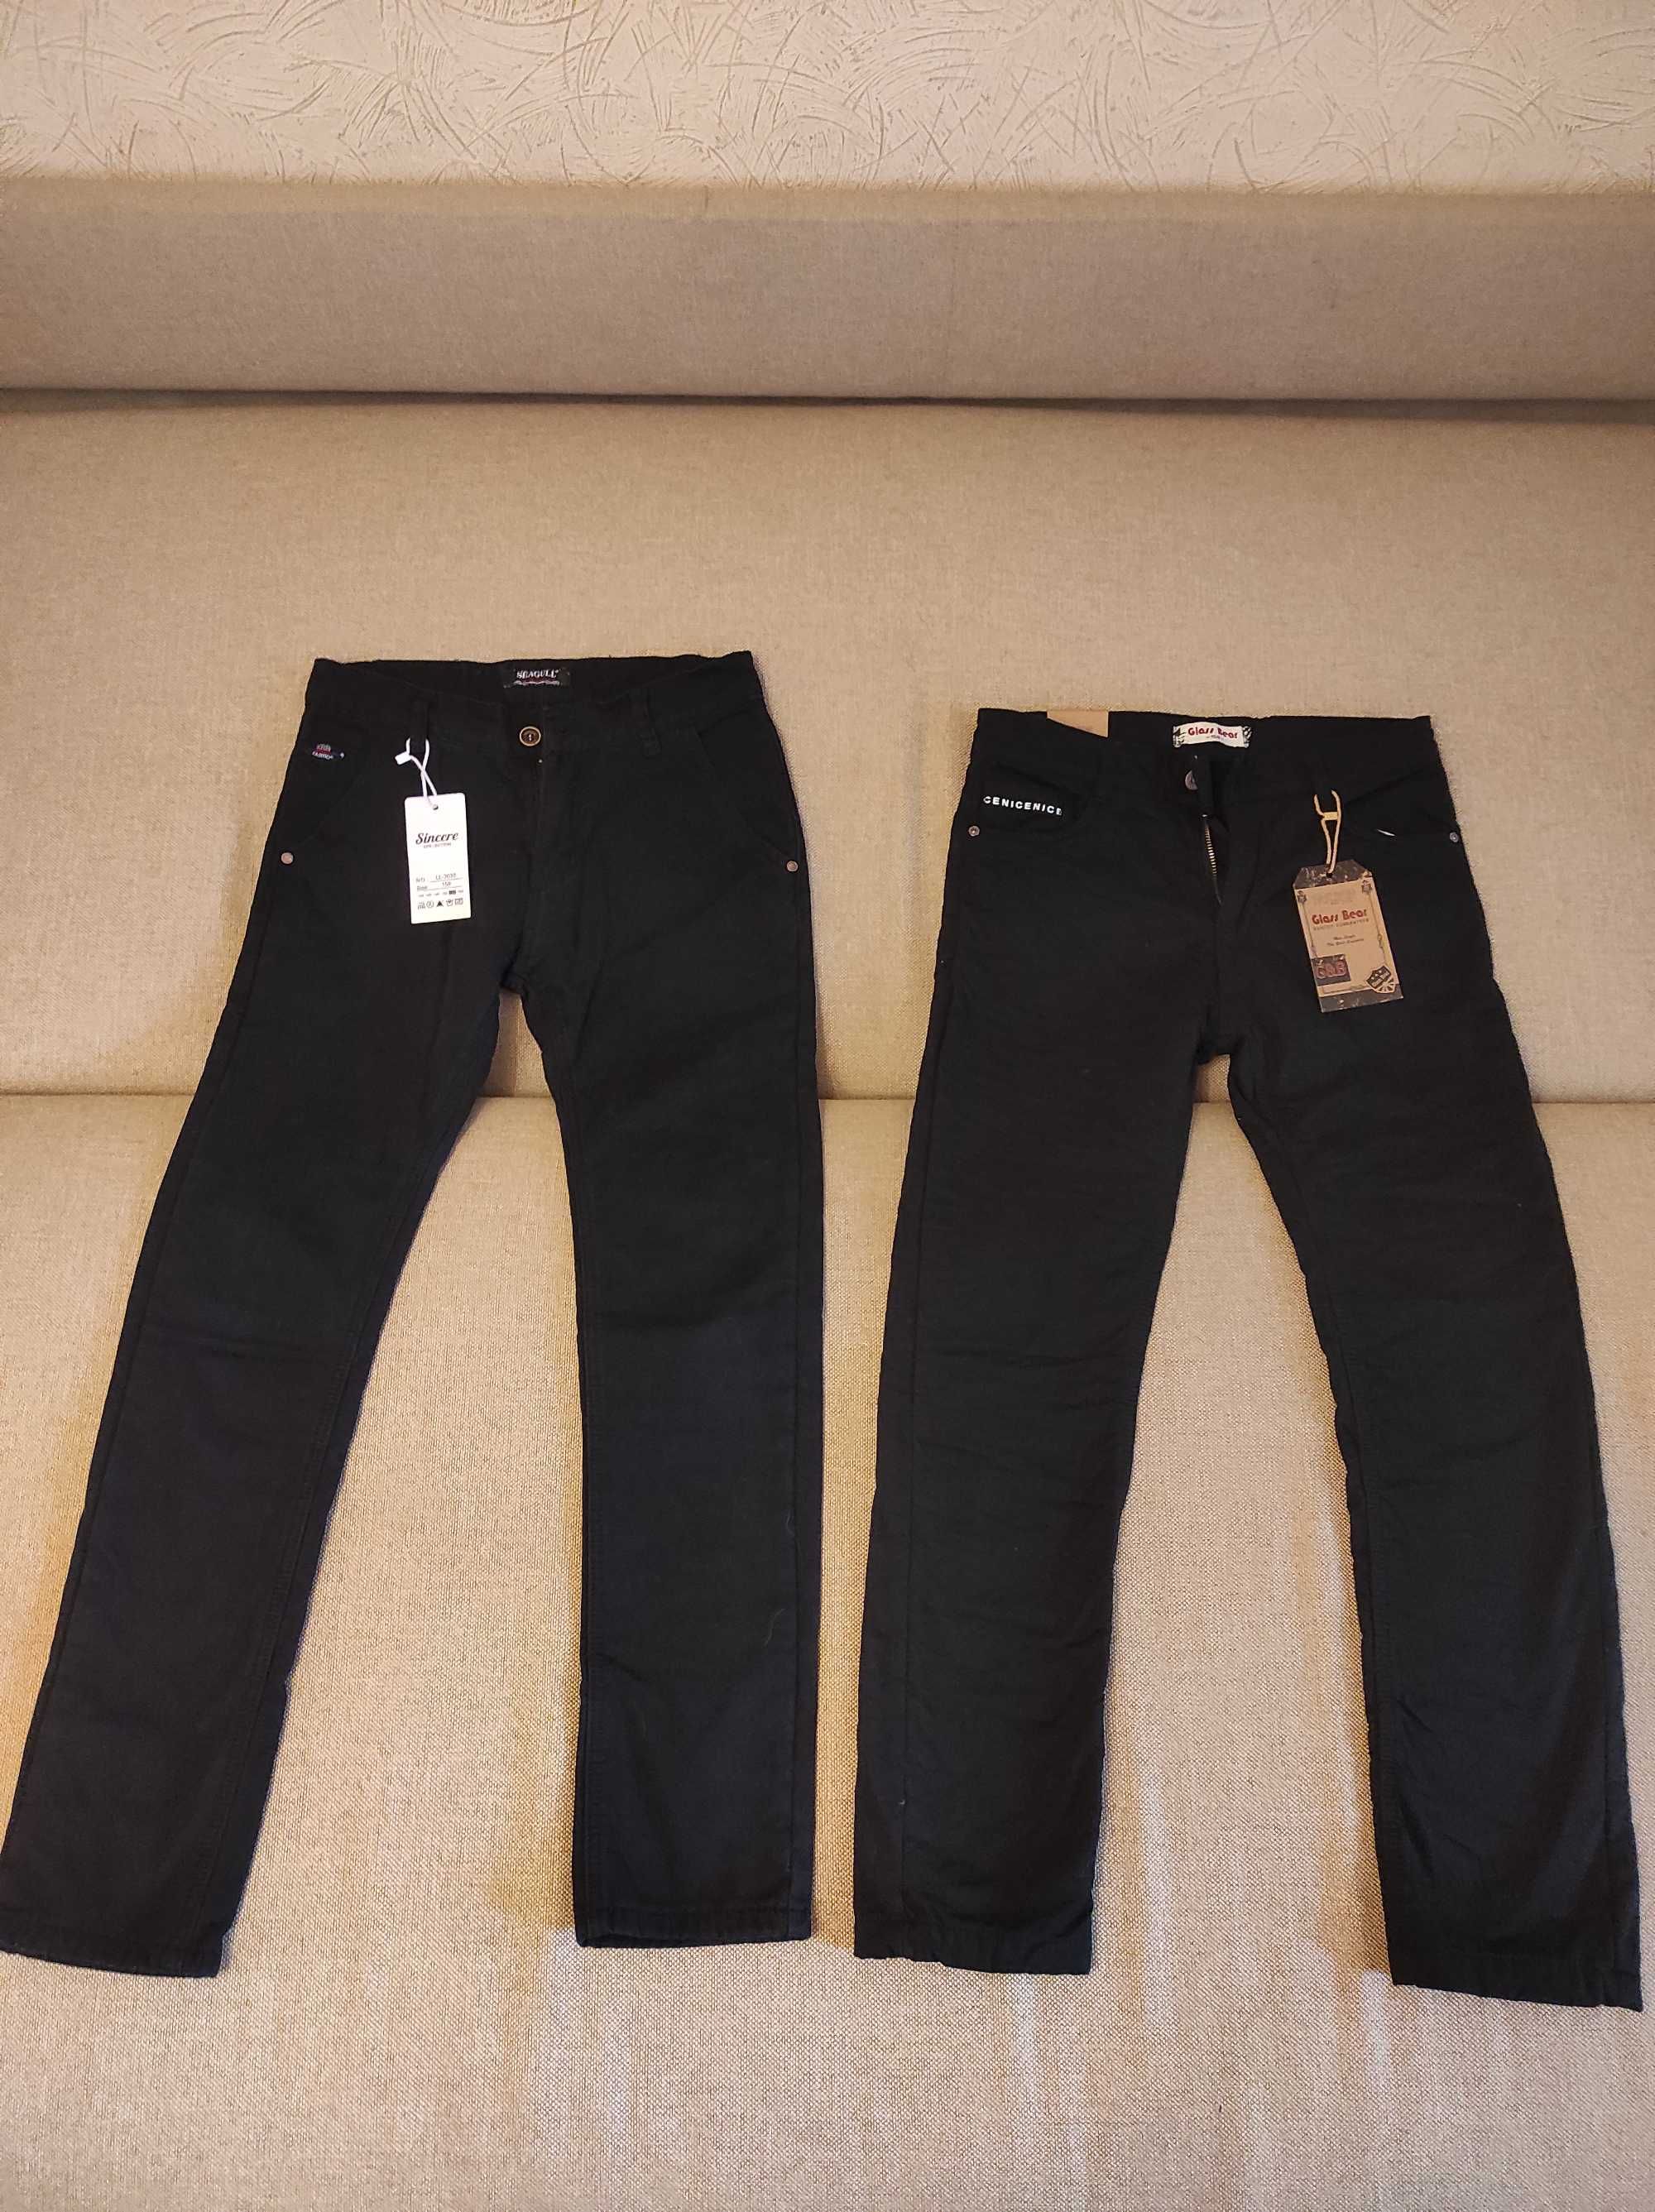 Брюки, джинсы, штаны утепленные на флисе, р.158